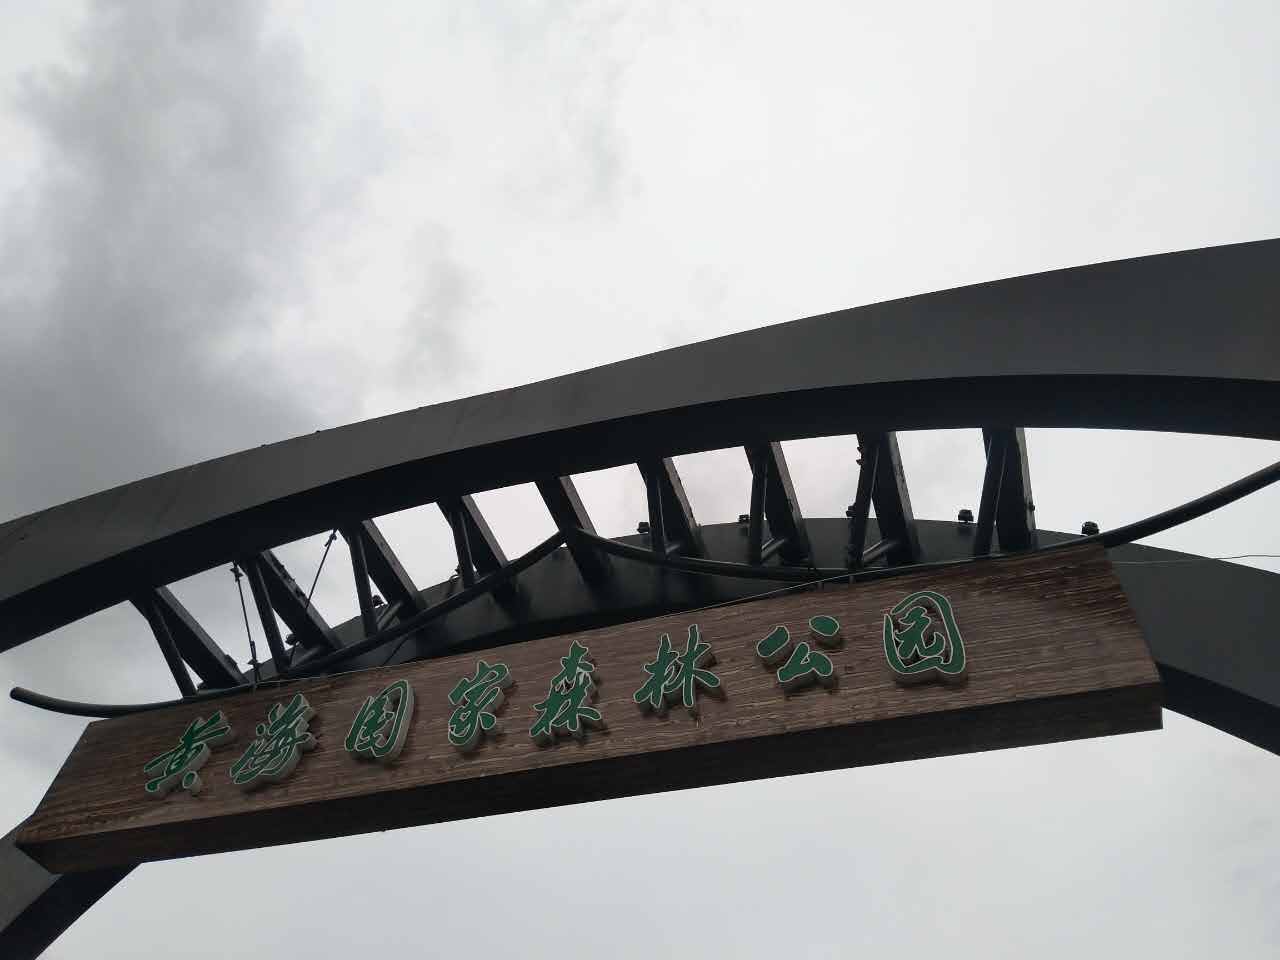 东台黄海森林公园logo图片